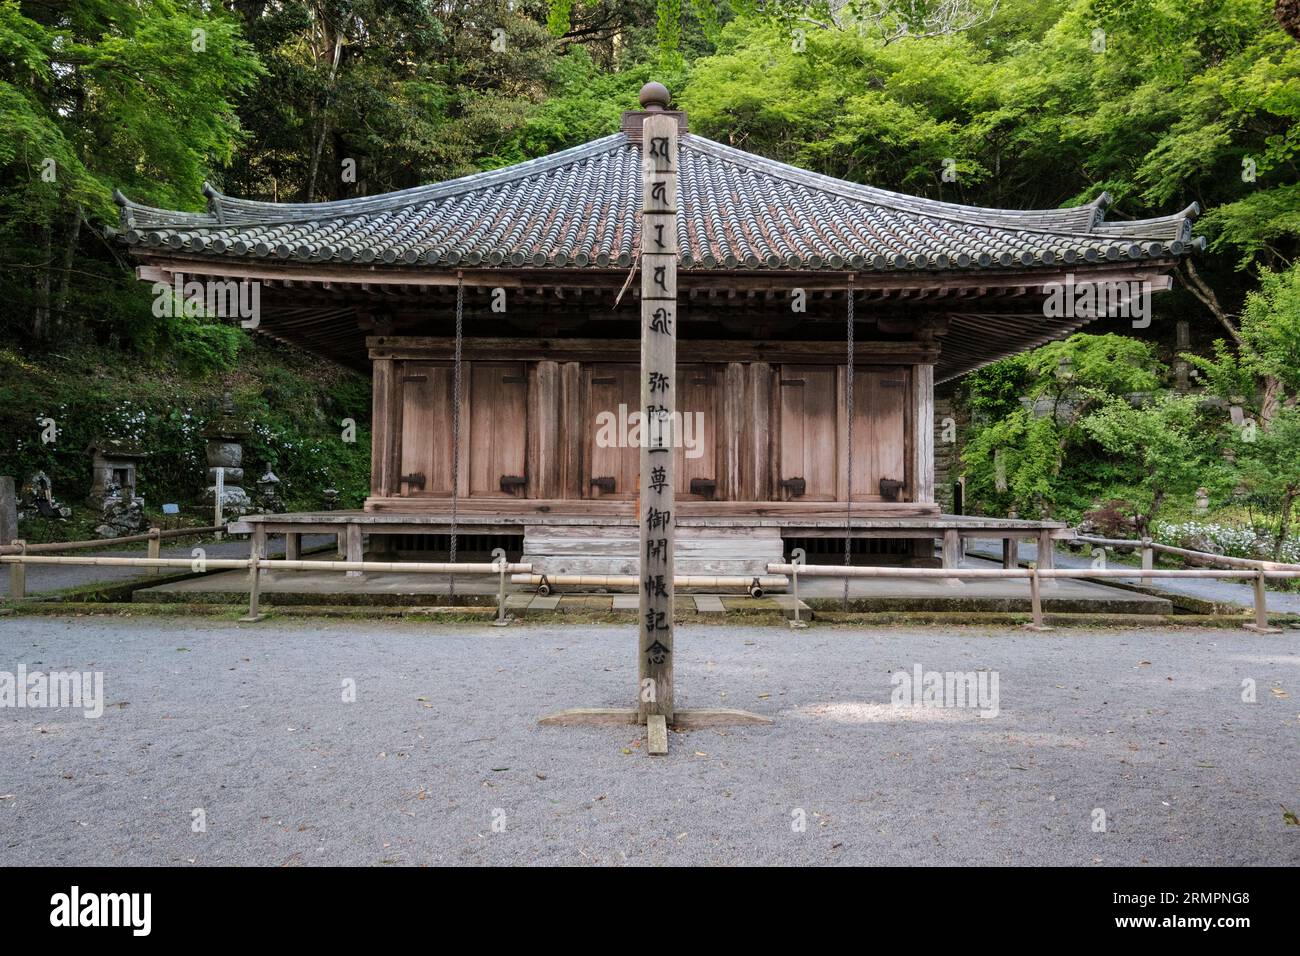 Japon, Kyushu. Temple bouddhiste Fuki-ji, la plus ancienne structure en bois sur Kyushu. Péninsule de Kunisaki, préfecture d'Oita. Banque D'Images